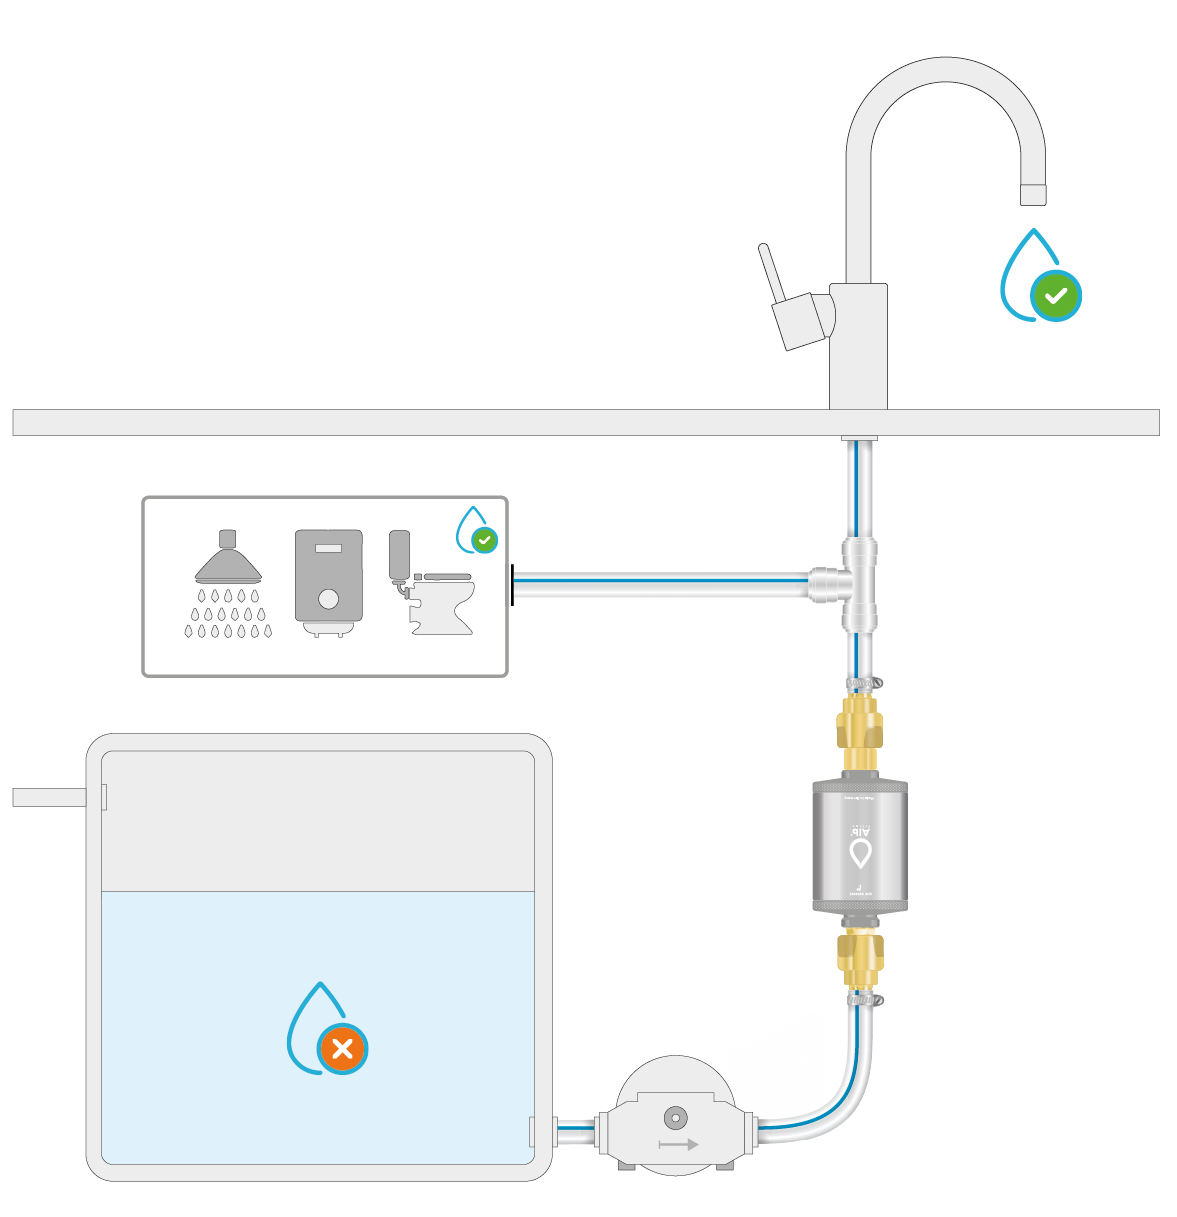 Alb Filter Travel Nano Trinkwasserfilter Keimsperre für den Festeinbau mit  Geka Anschluss jetzt bestellen!